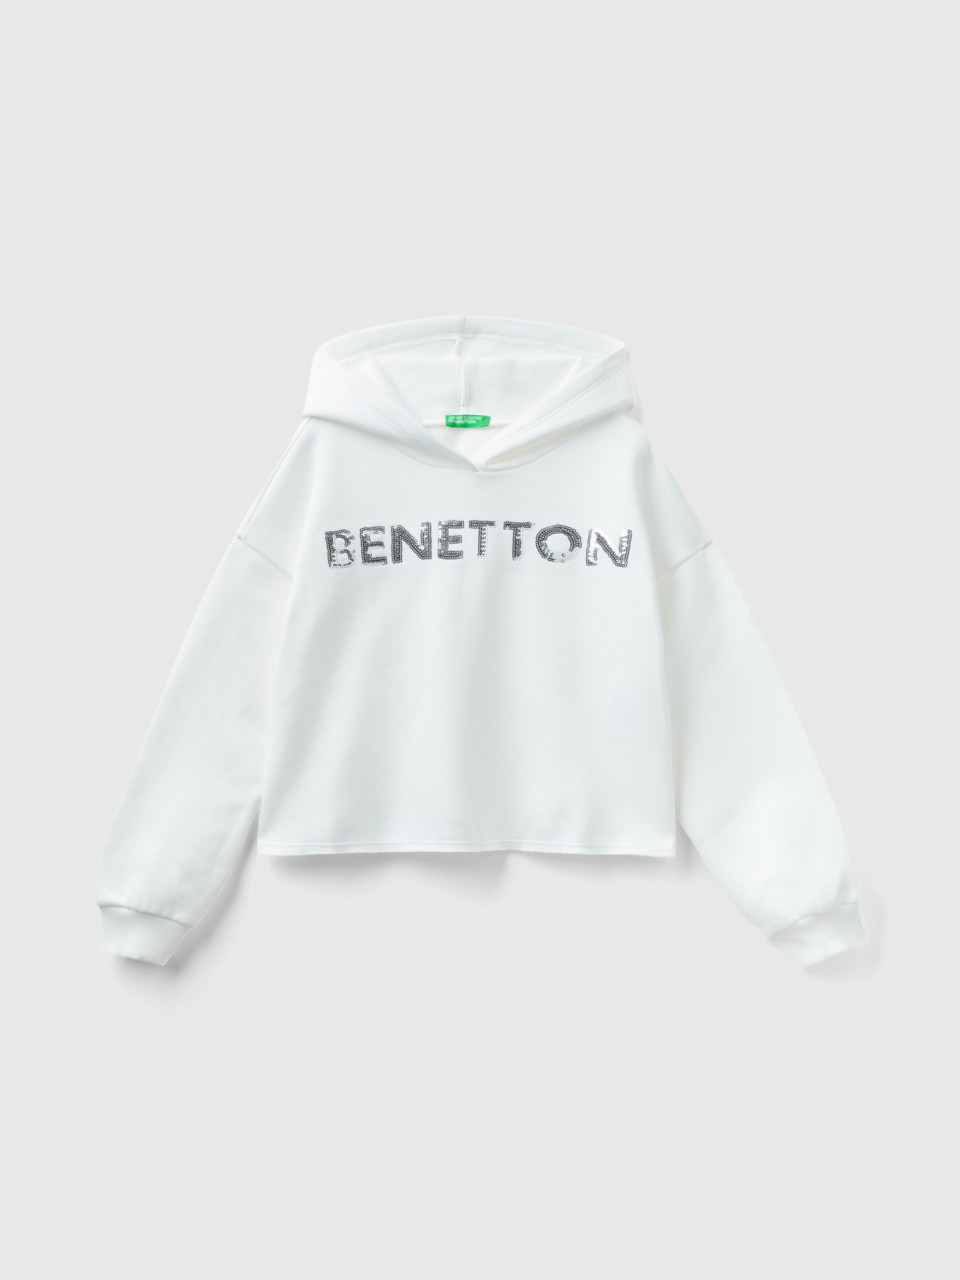 Benetton, Kapuzen-sweatshirt Mit Pailletten, Cremeweiss, female